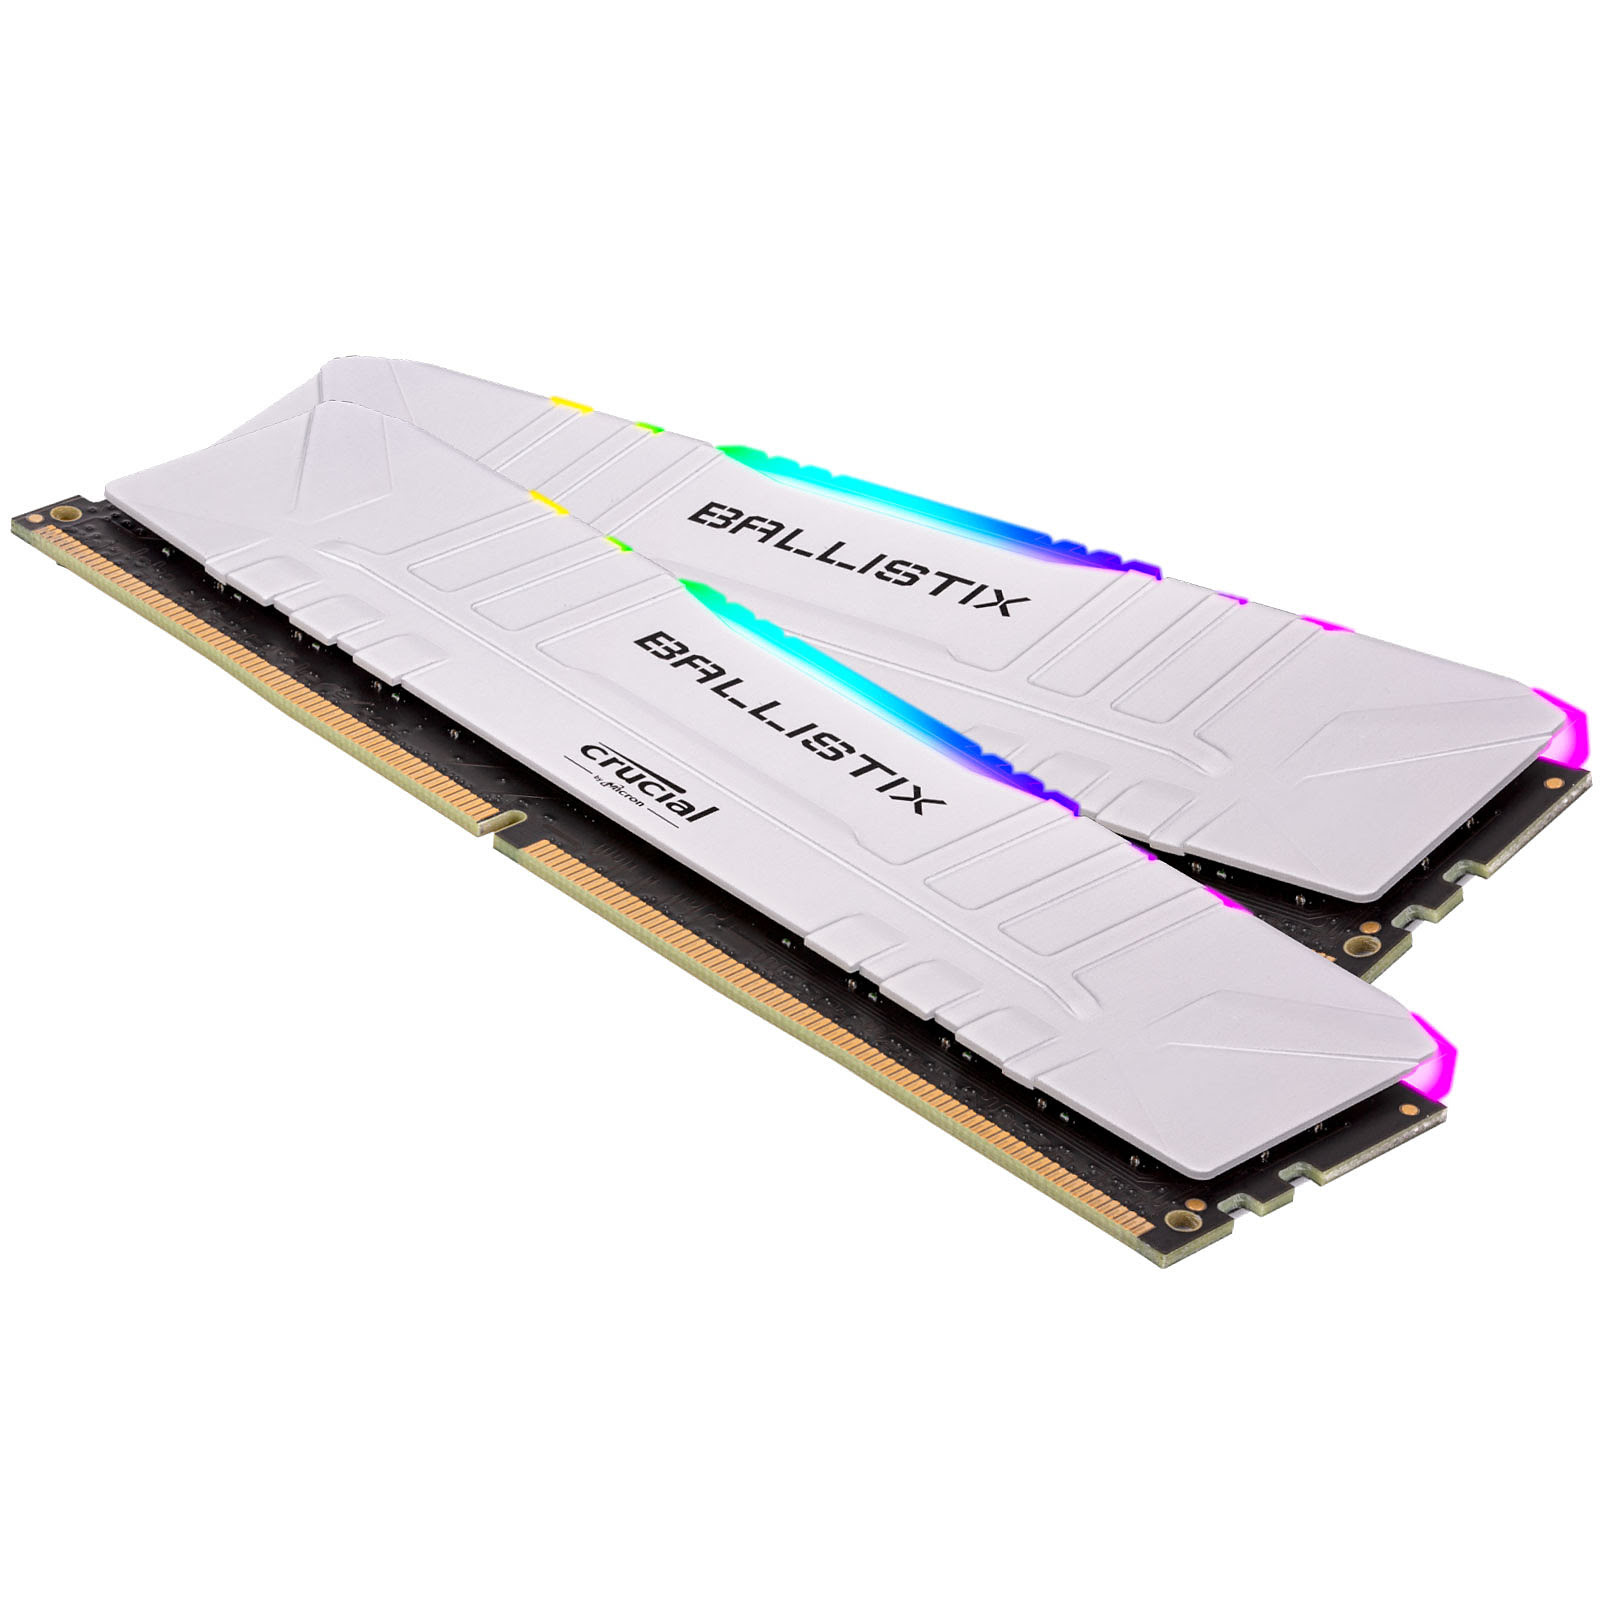 Ballistix RGB 8Go (1x8Go) DDR4 3000MHz - Mémoire PC Ballistix sur